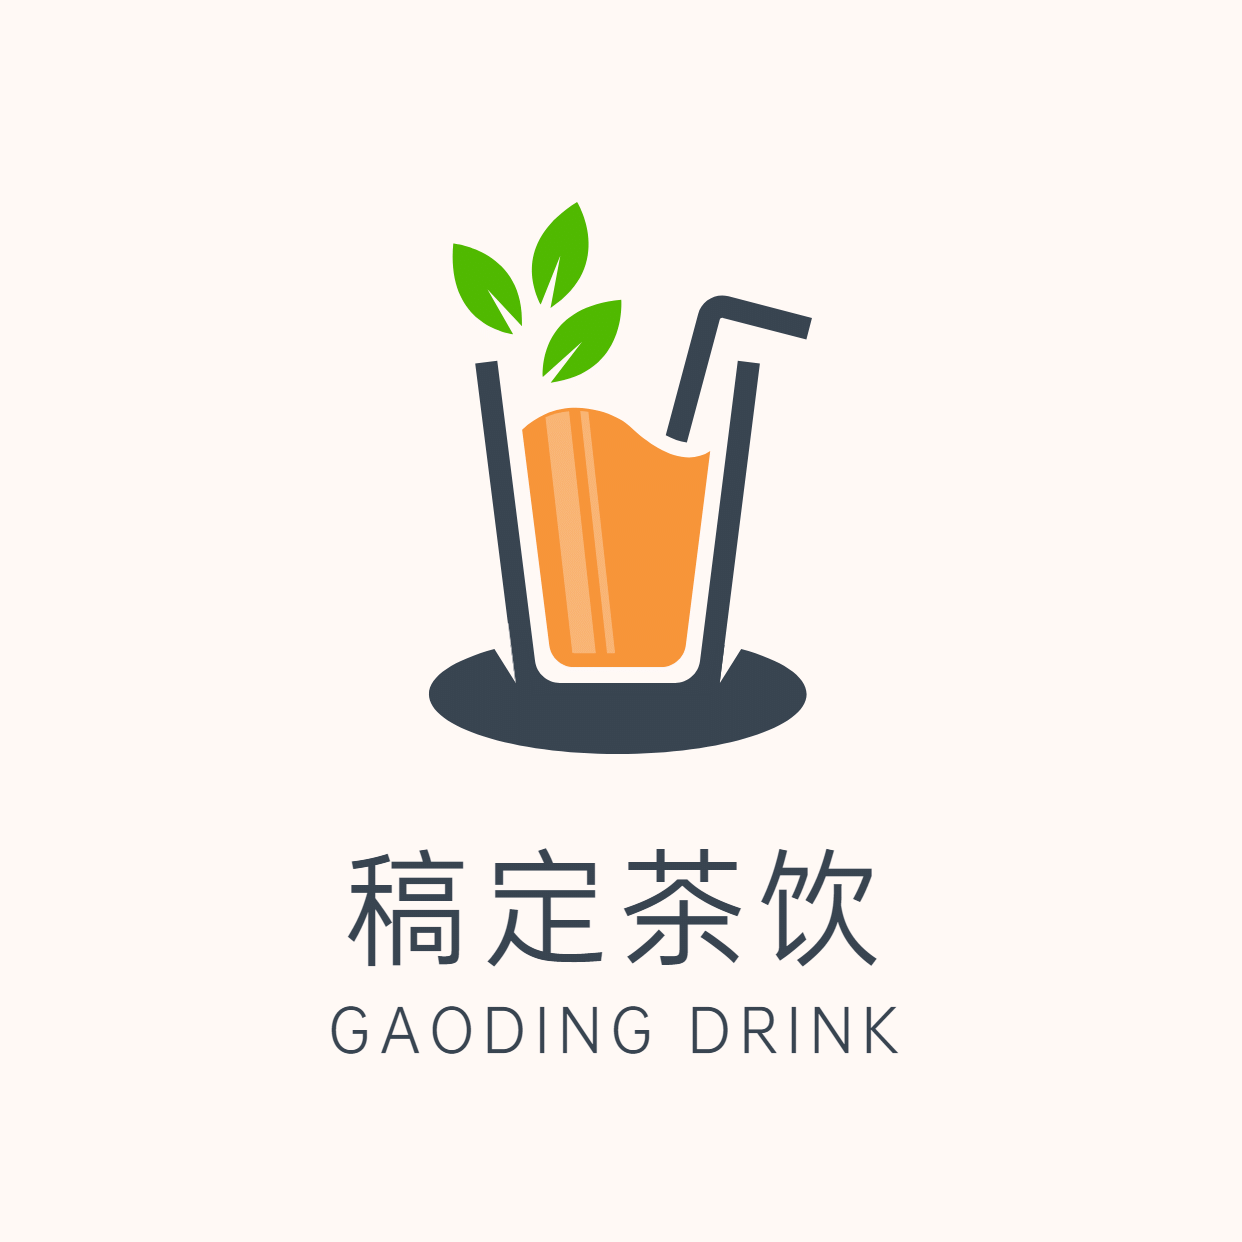 Logo头像餐饮美食茶饮店标手绘创意预览效果